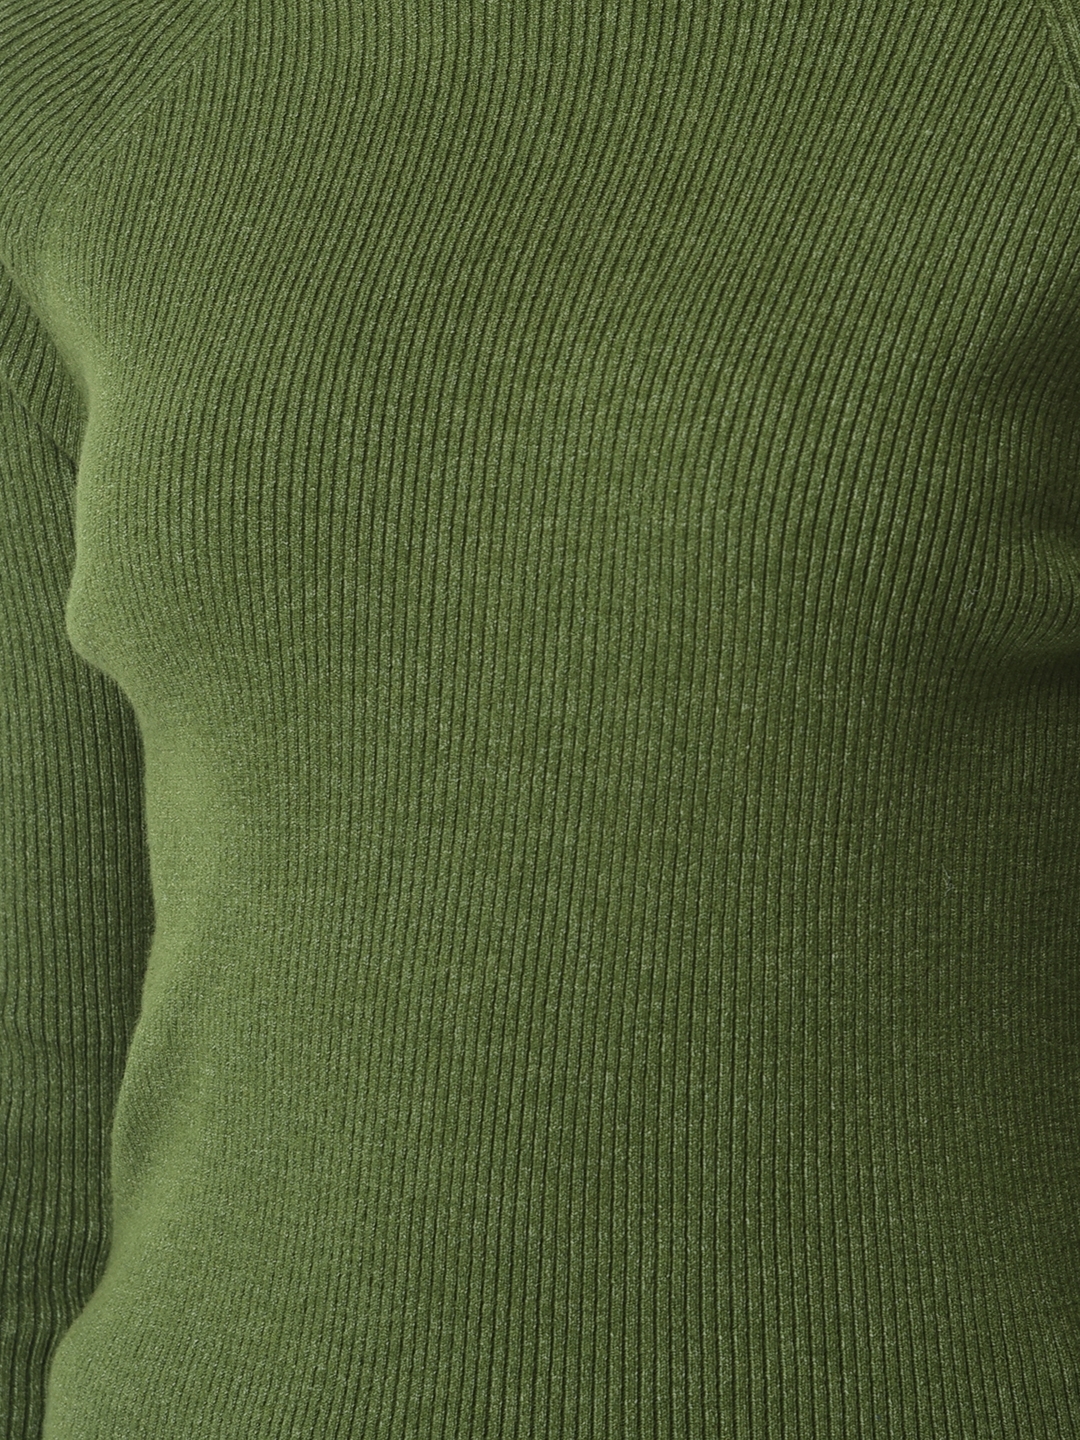 Crimsoune Club | Crimsoune Club Women Fitted Green Sweater 6